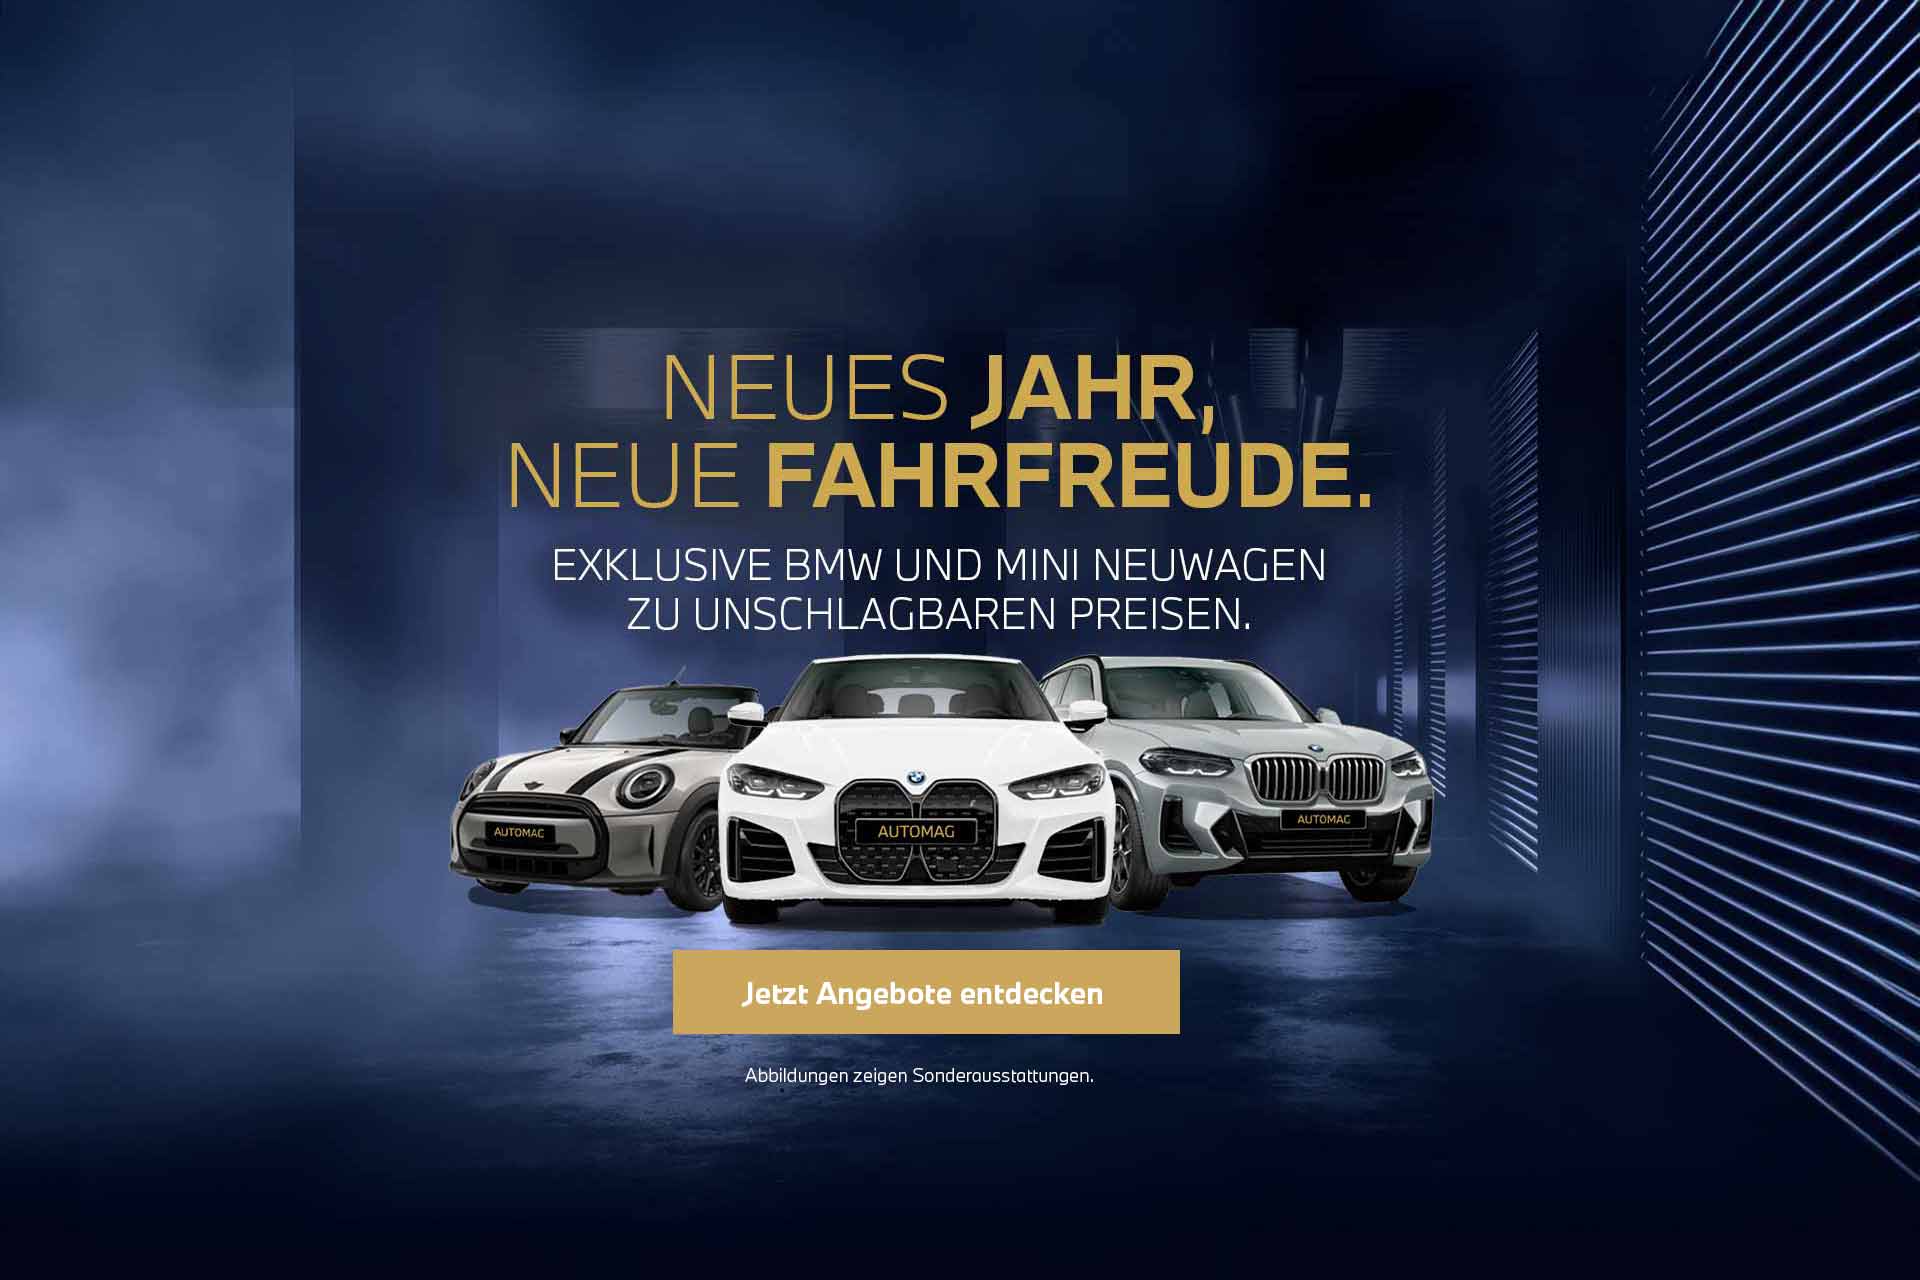 Original BMW Teile und Zubehör bei BMW Automag GmbH